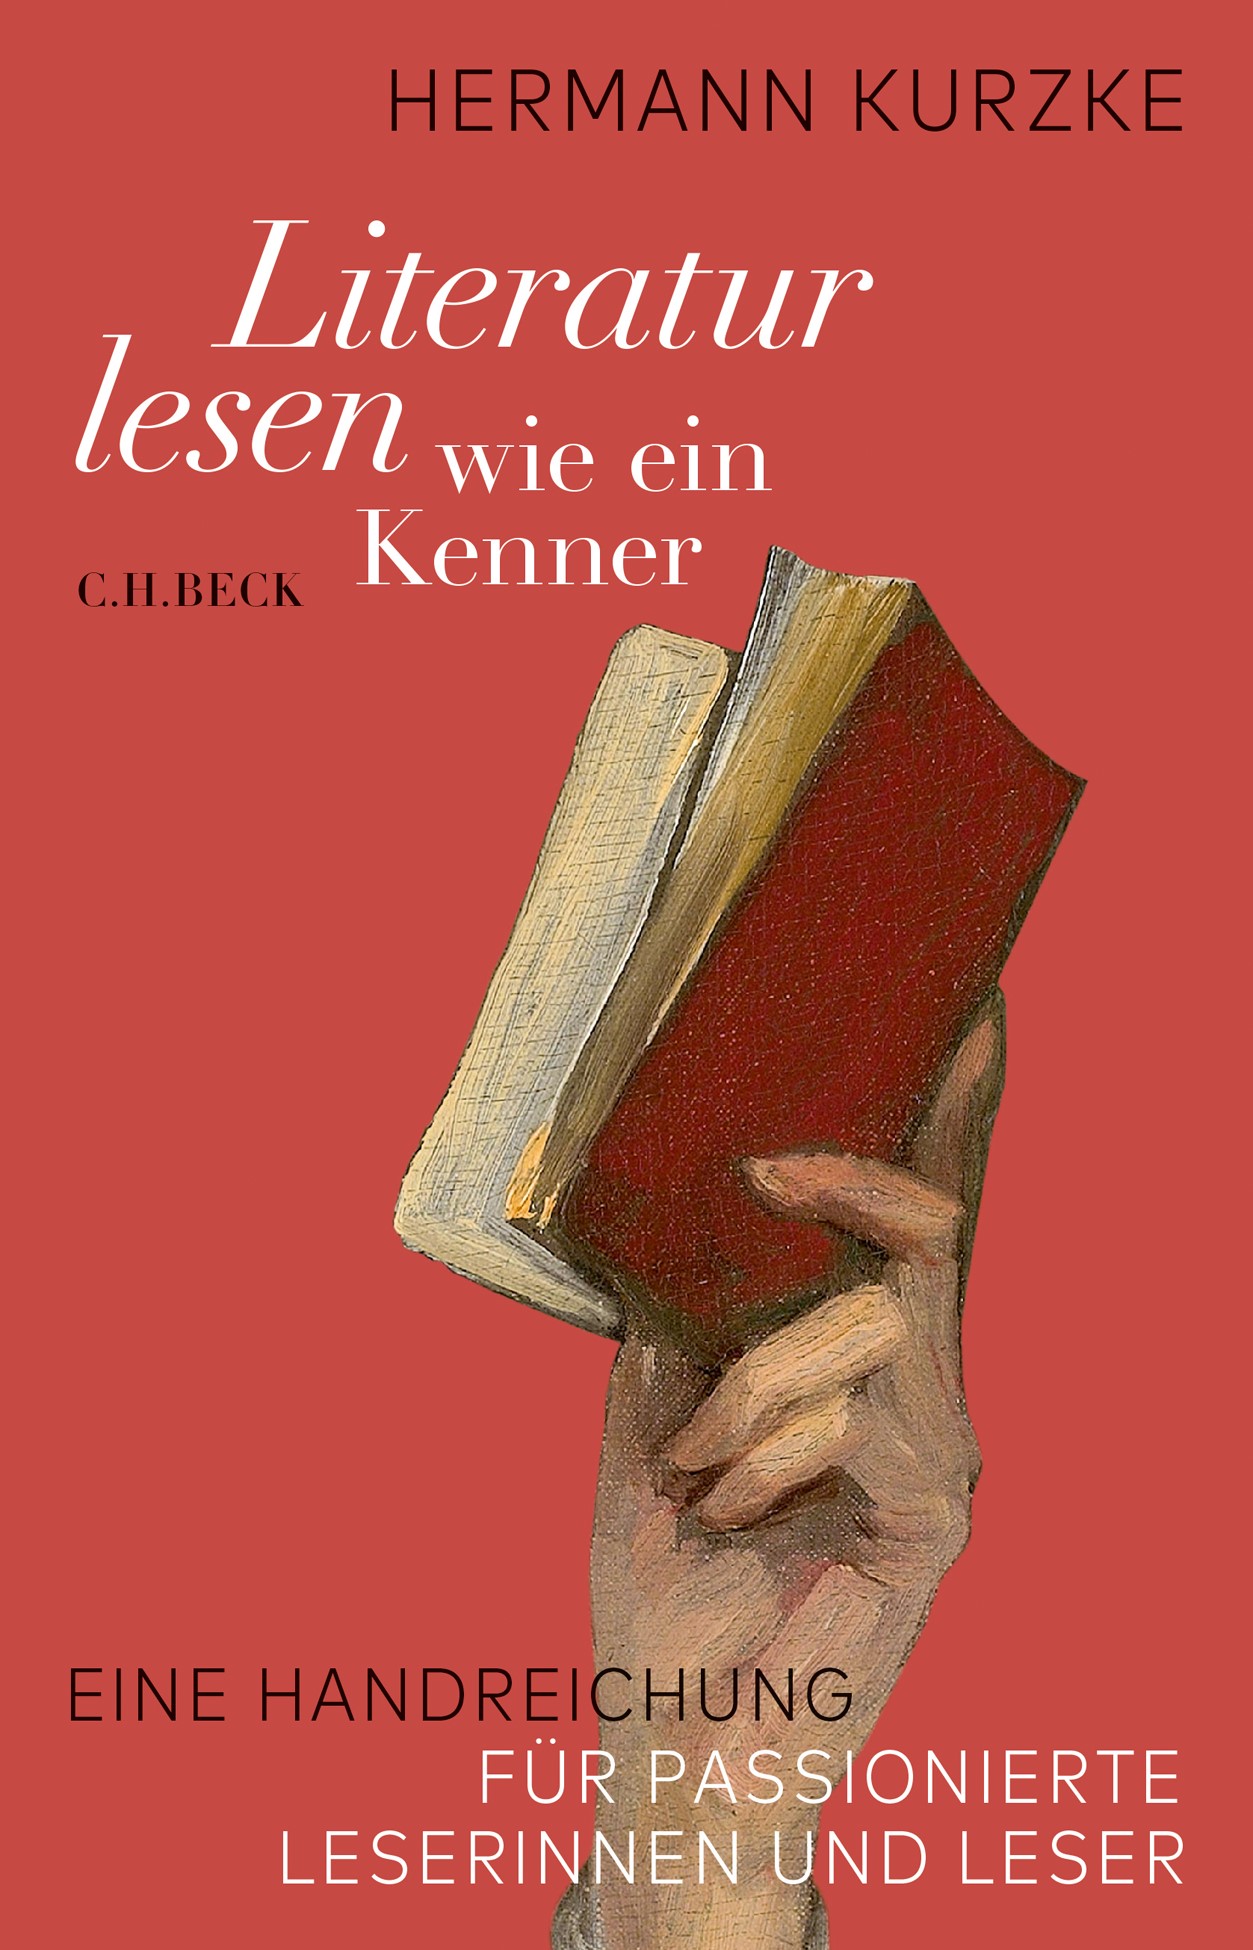 Cover: Kurzke, Hermann, Literatur lesen wie ein Kenner